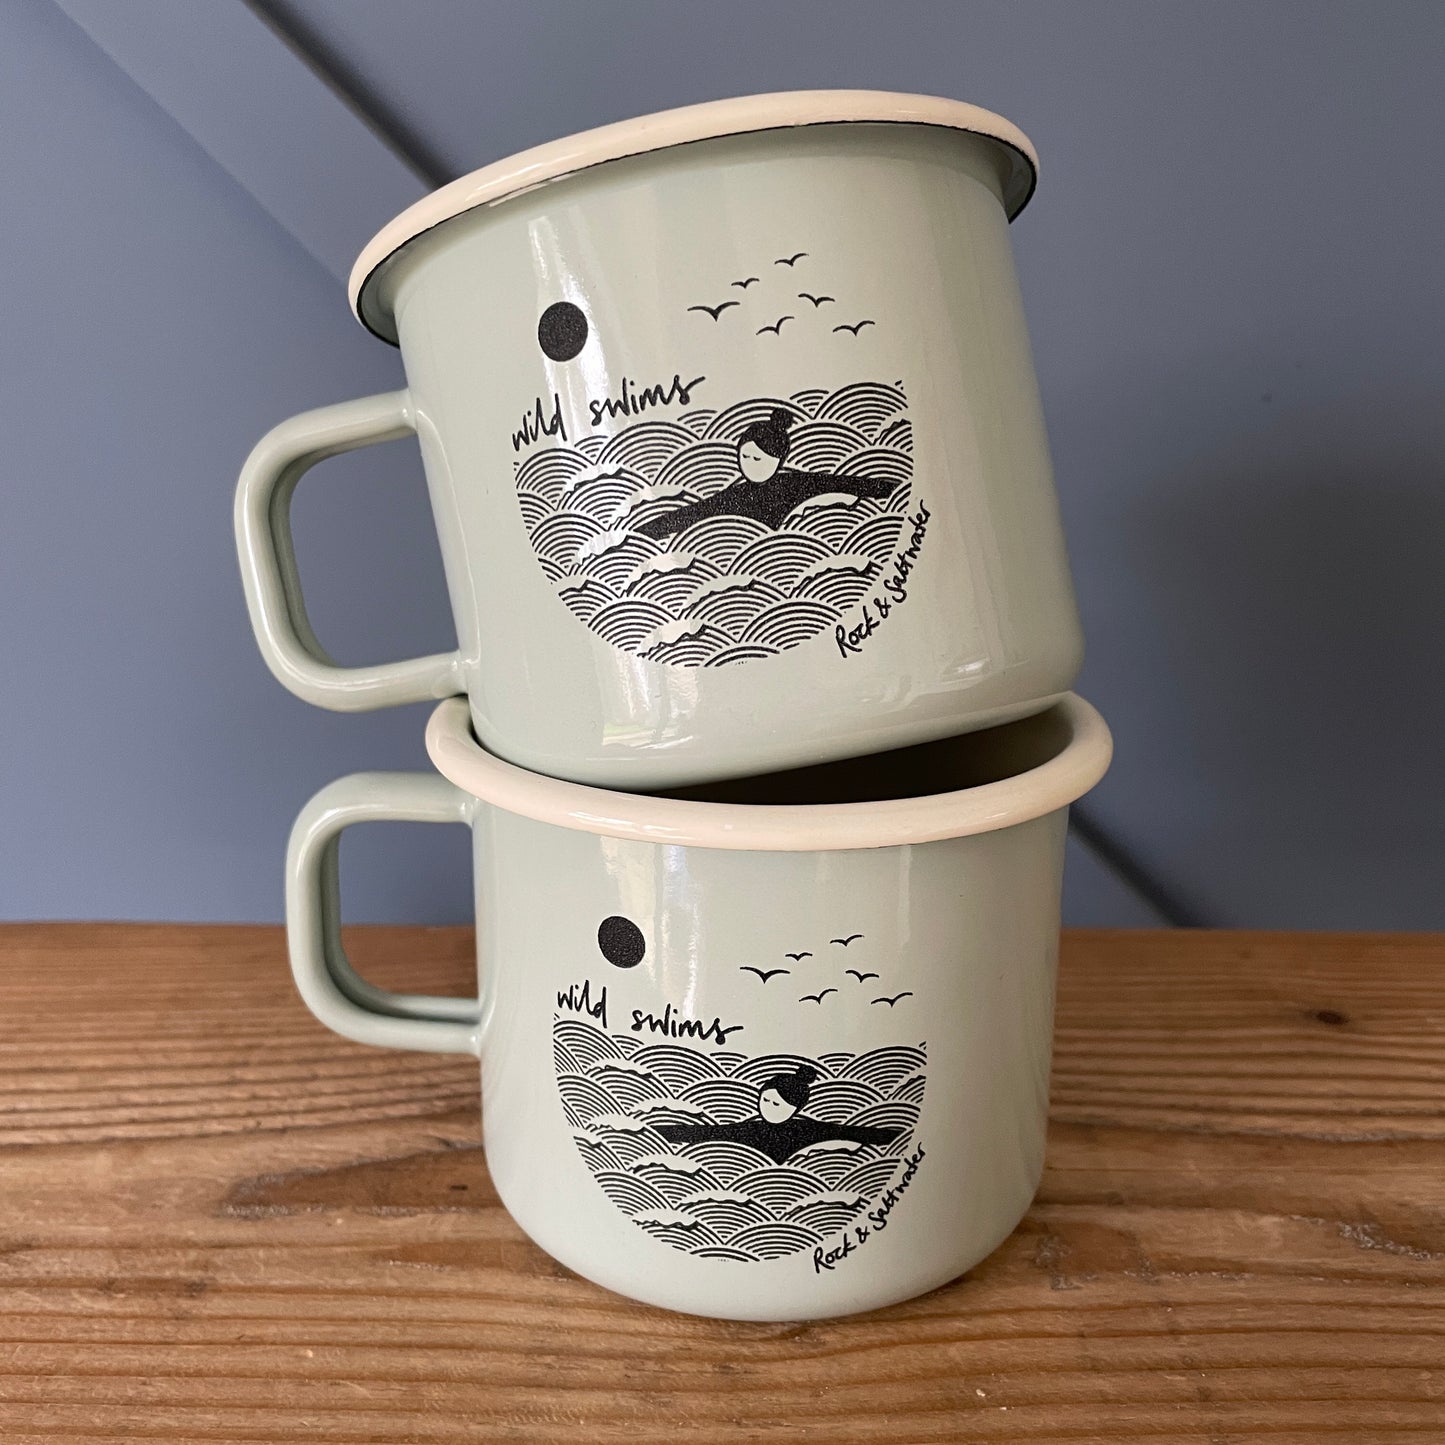 ‘Wild swims’ large enamel mugs